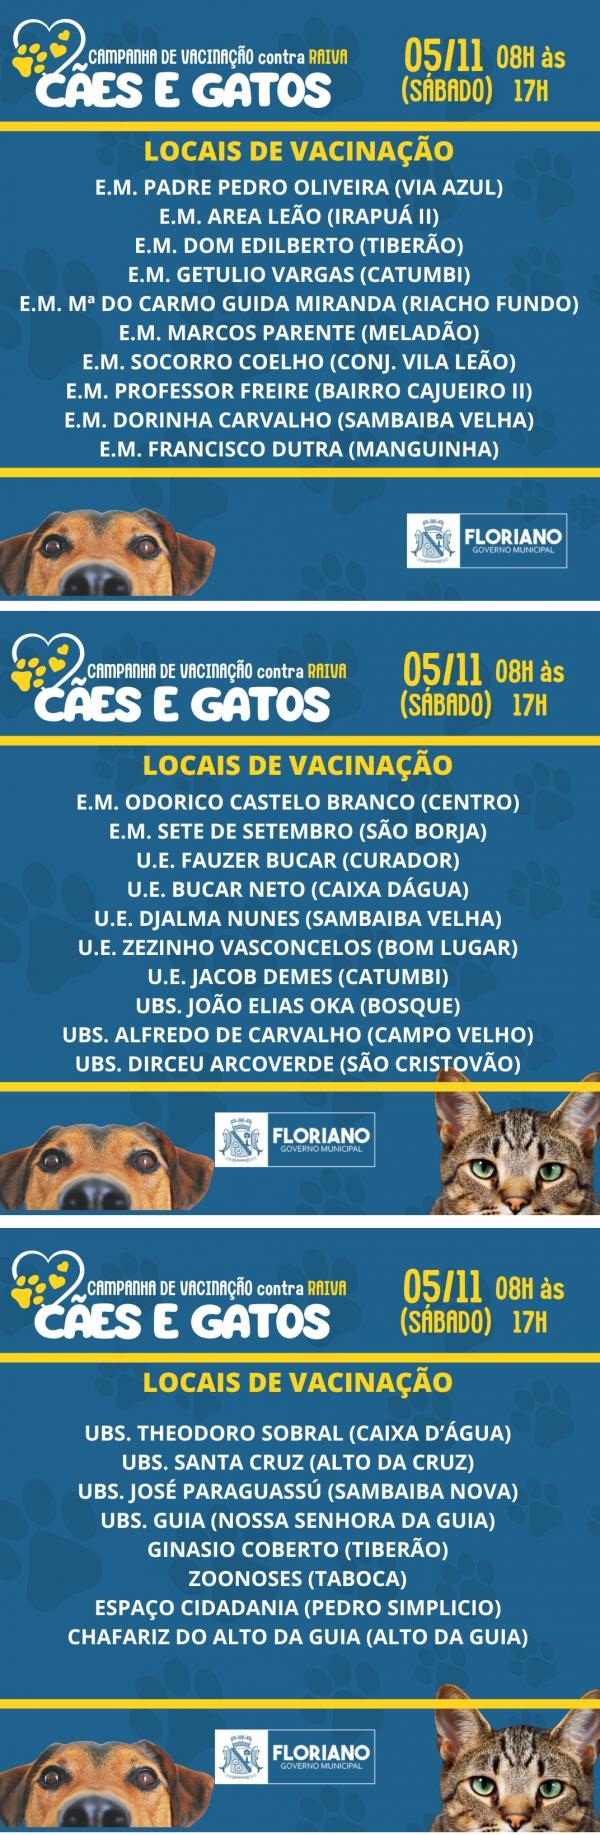 Campanha de Vacinação - cães e gatos(Imagem:Divulgação)